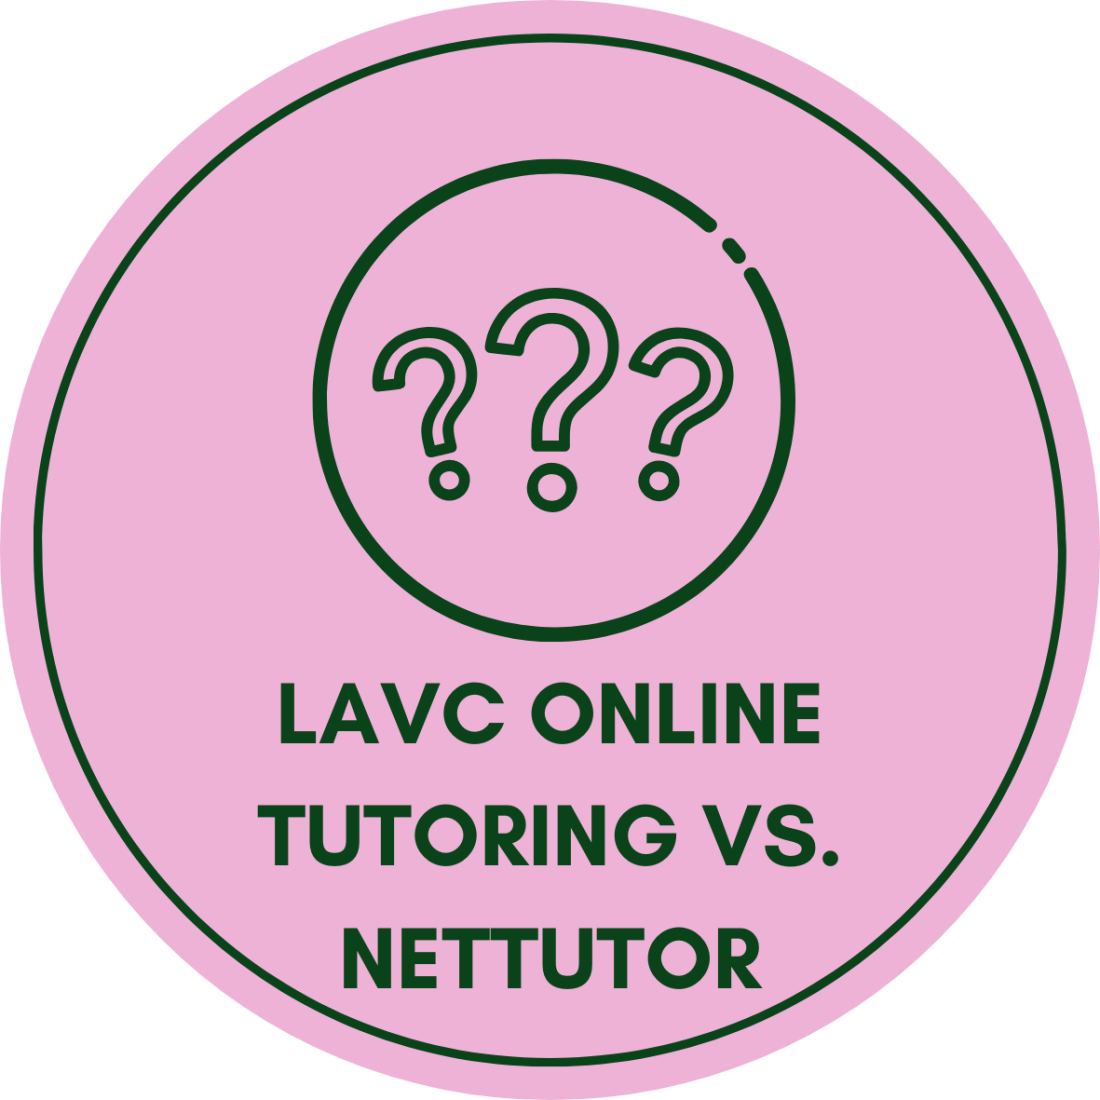 NetTutor vs LAVC Online Tutoring